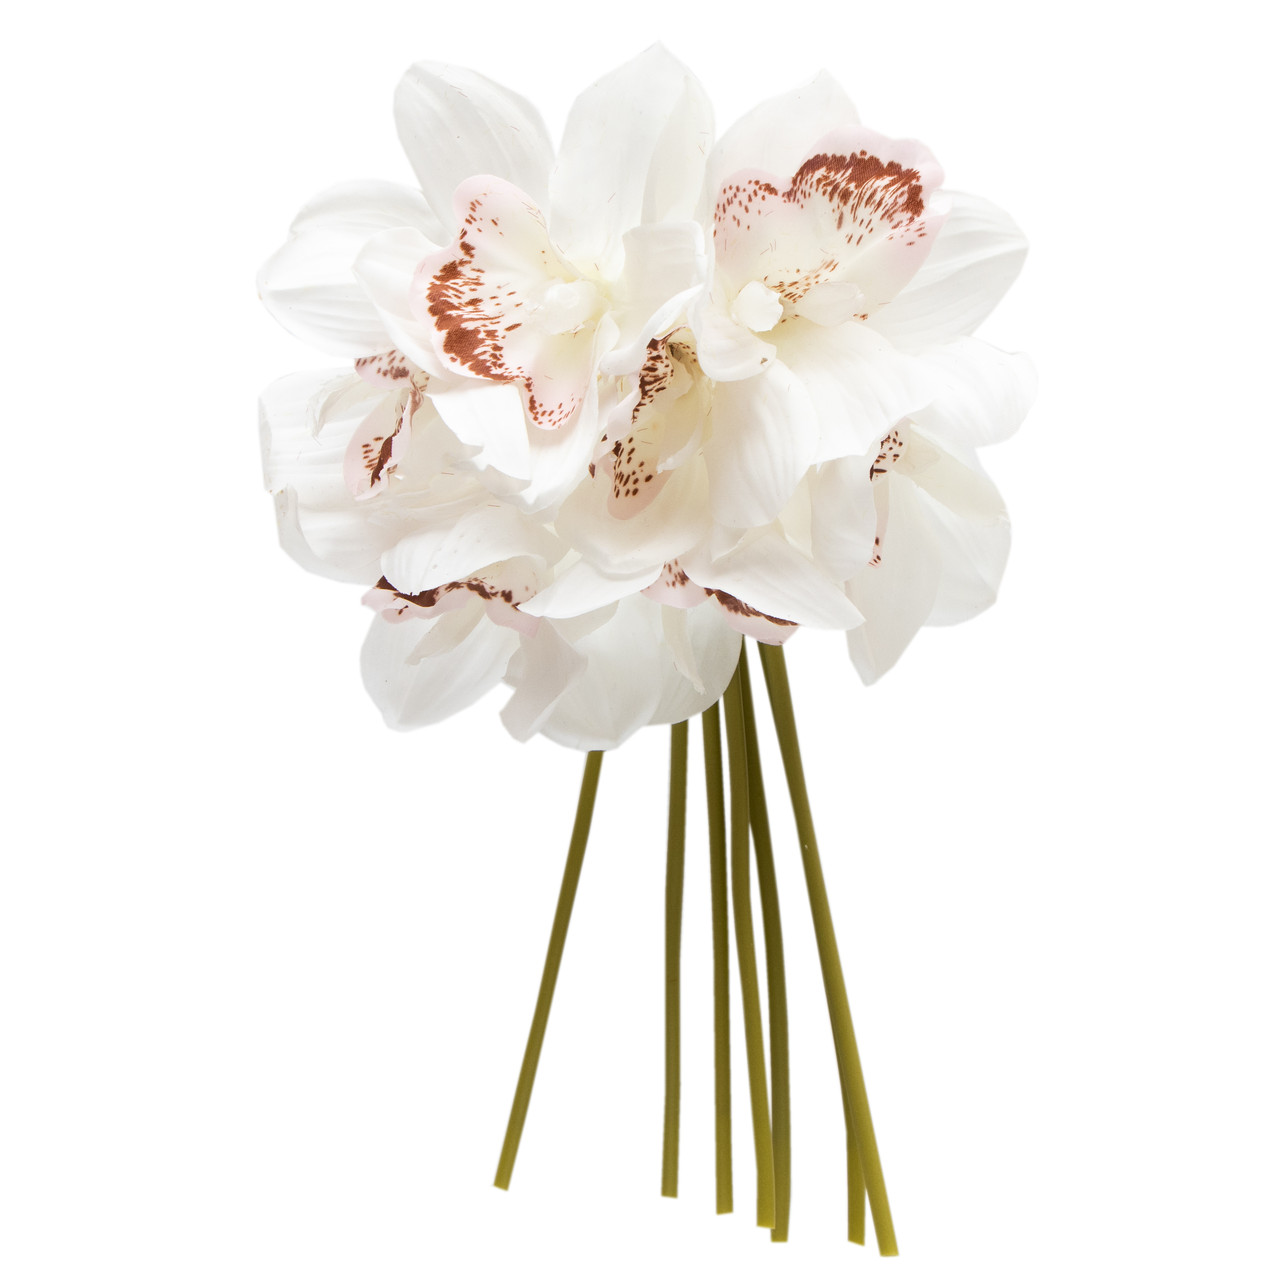 Штучний букет квітів міні-орхідеї, 7 шт, 30 см, білий, тканина, пластик (631260)